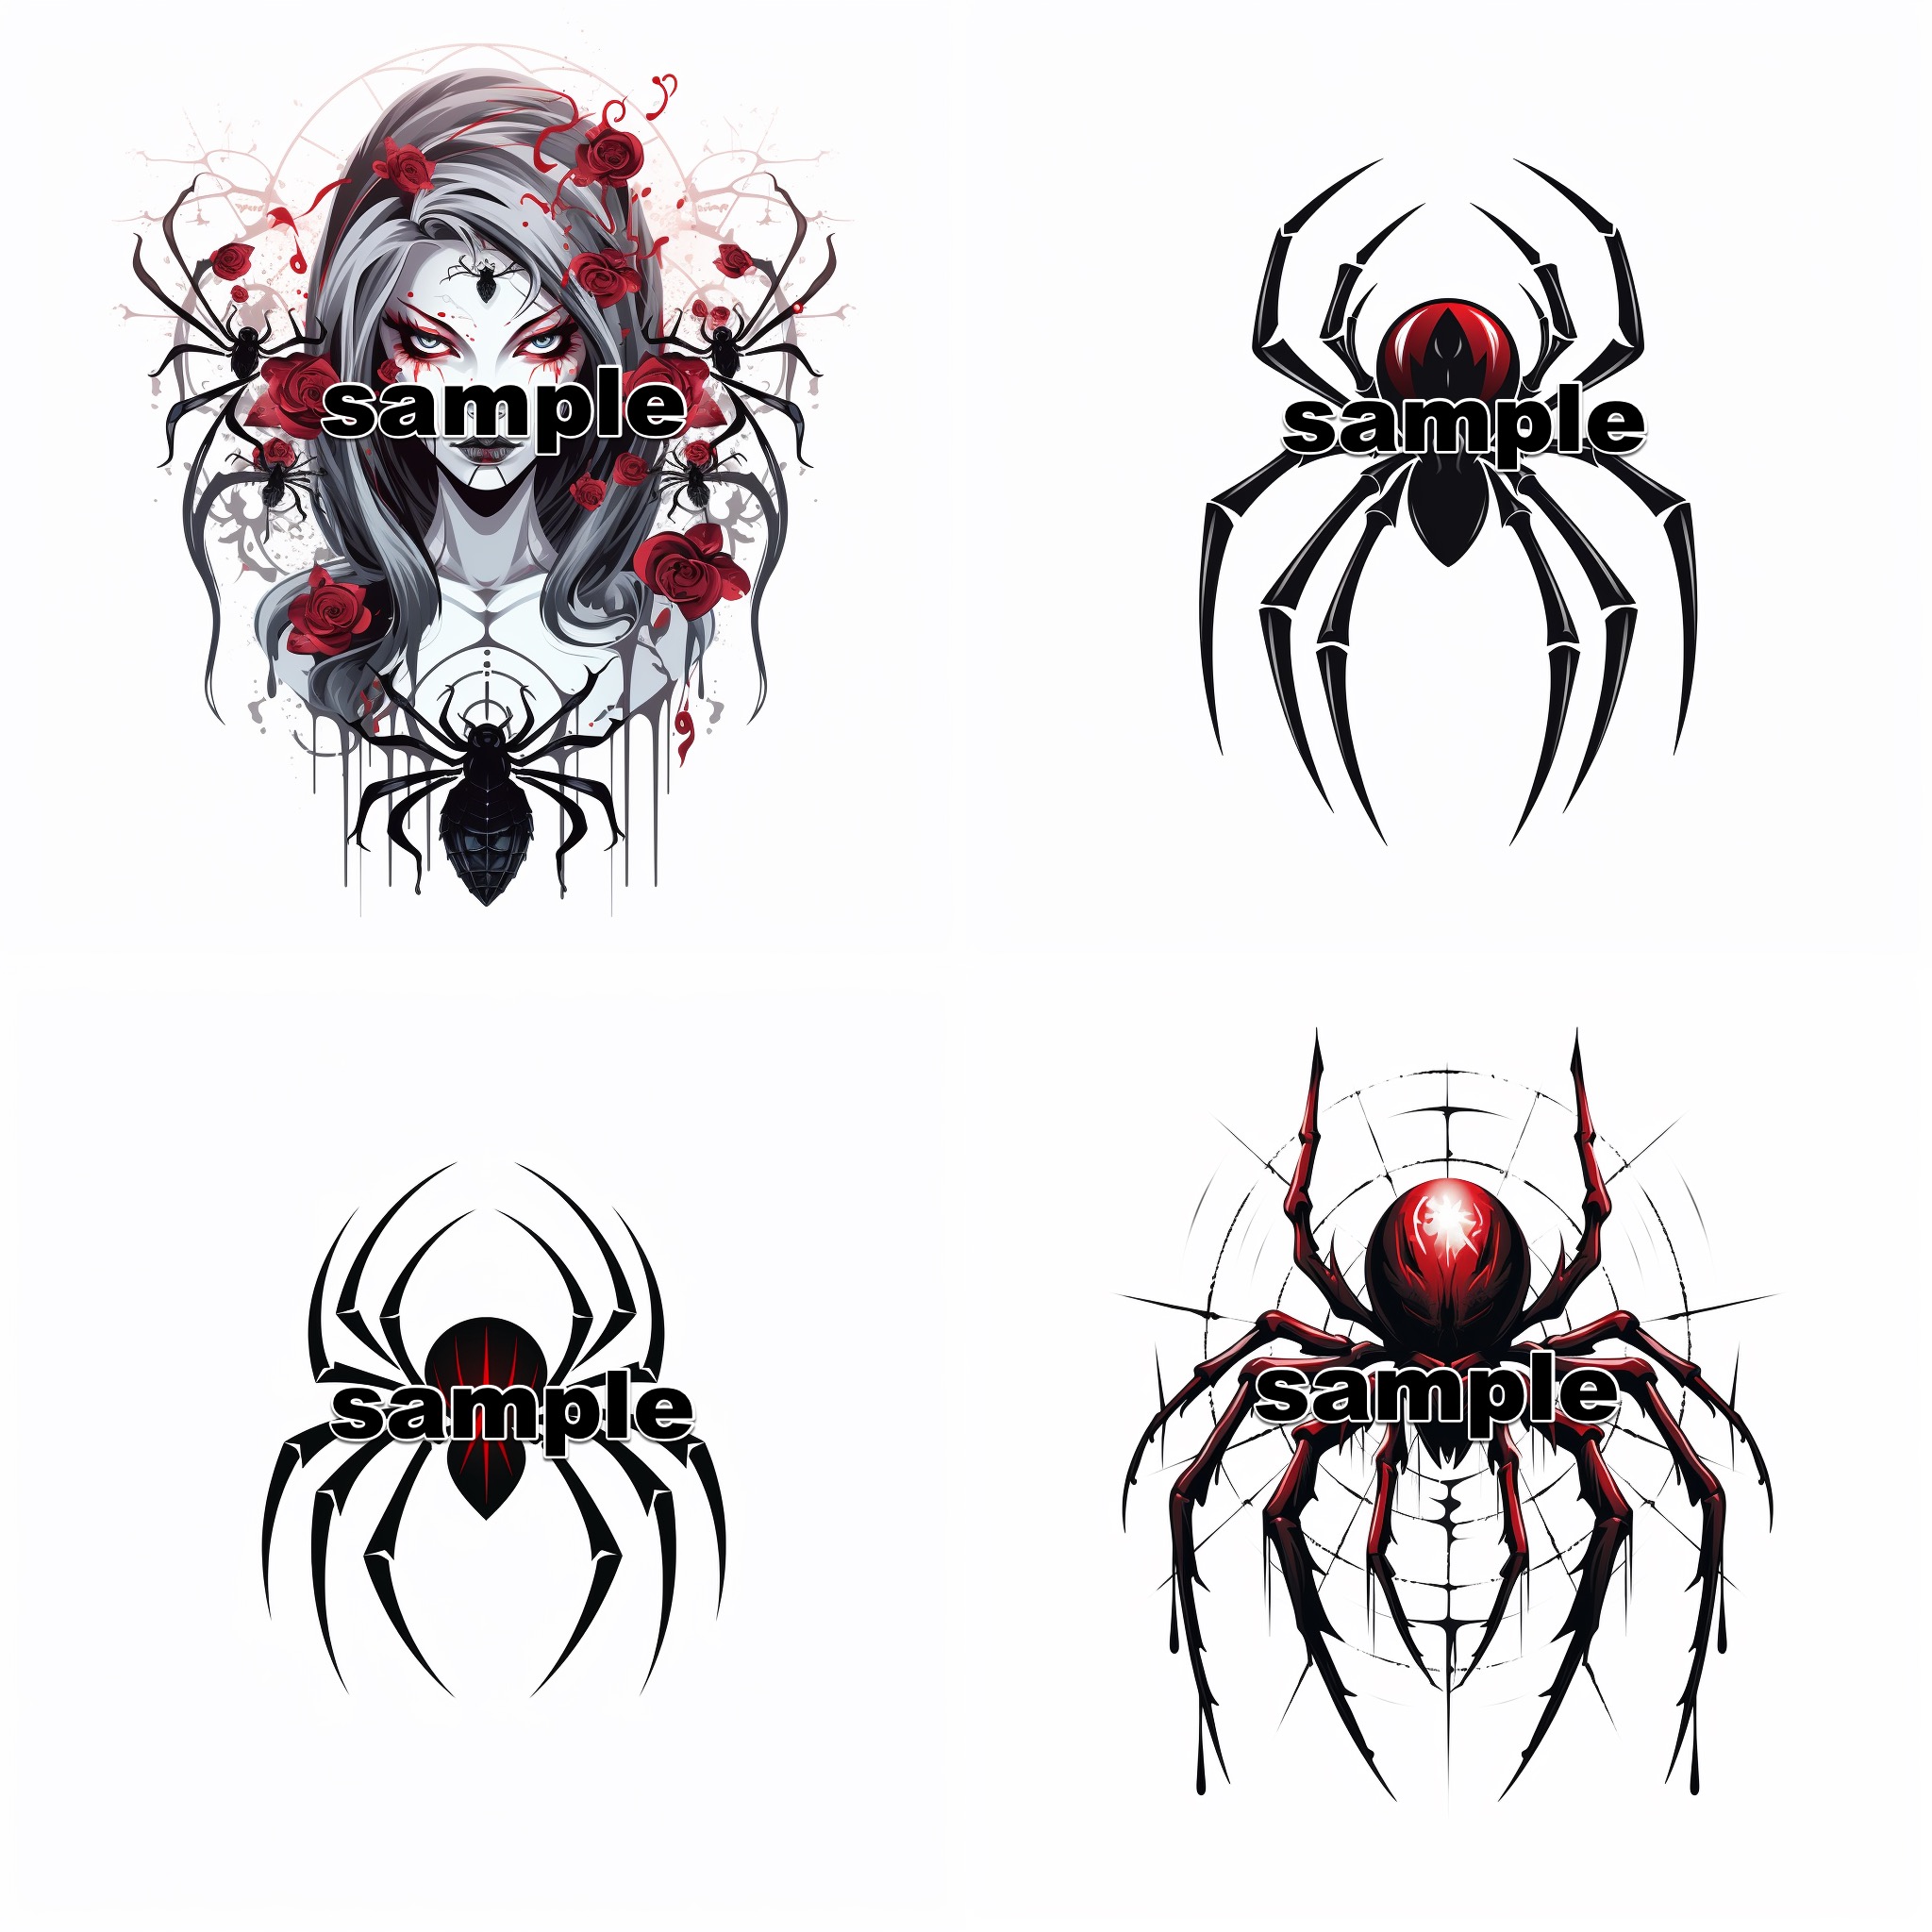 black widow spider designs